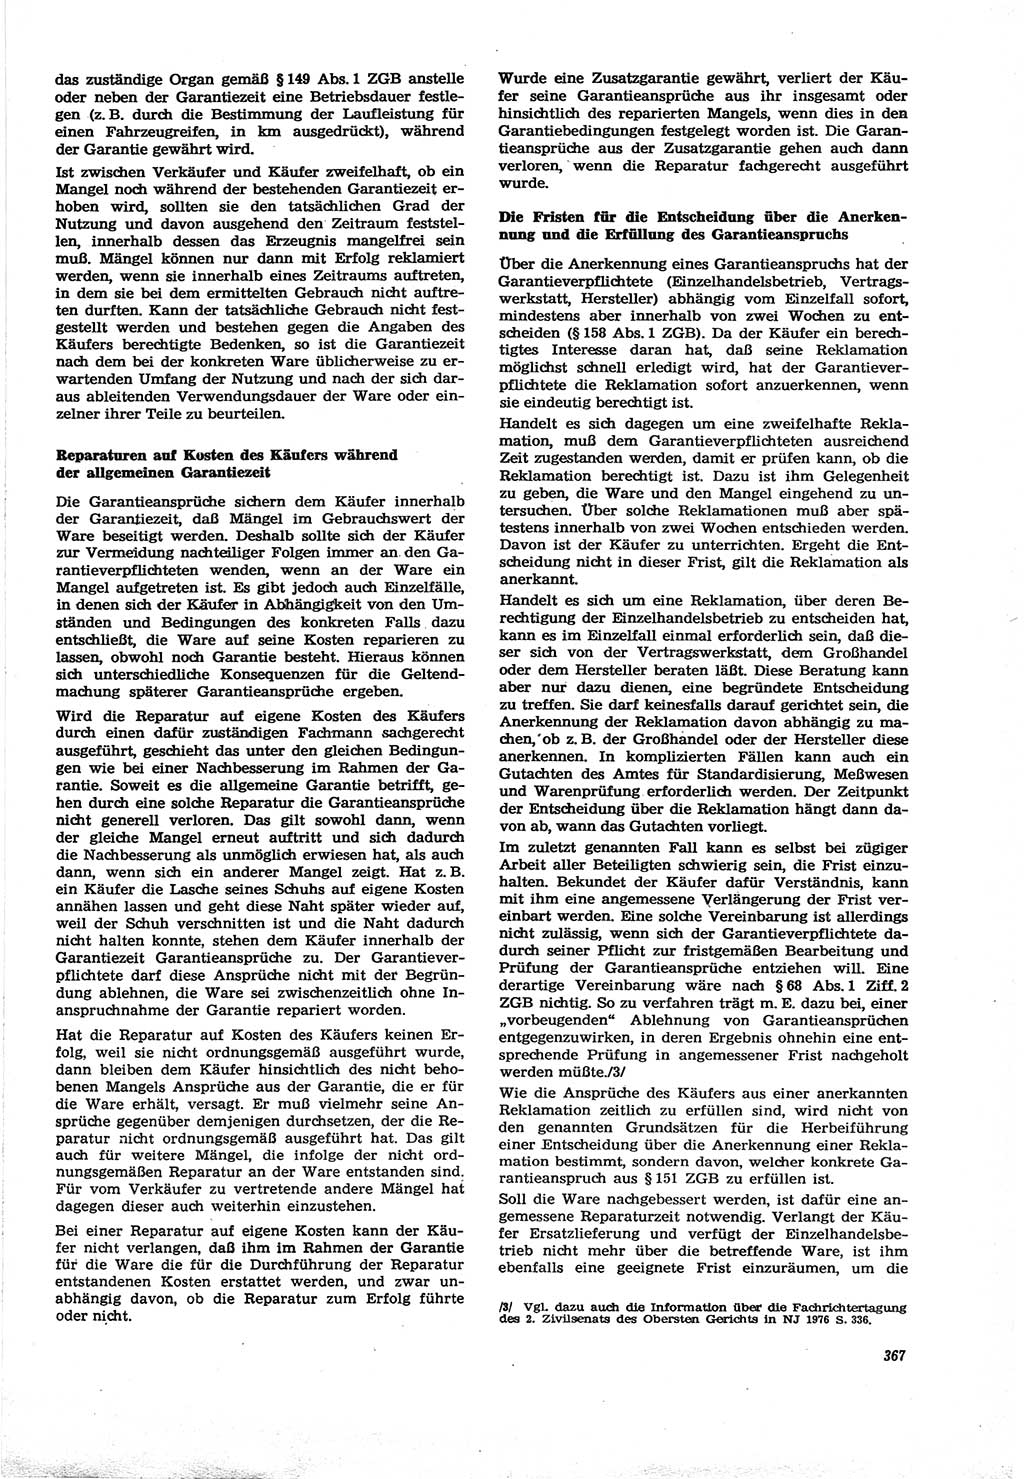 Neue Justiz (NJ), Zeitschrift für Recht und Rechtswissenschaft [Deutsche Demokratische Republik (DDR)], 30. Jahrgang 1976, Seite 367 (NJ DDR 1976, S. 367)